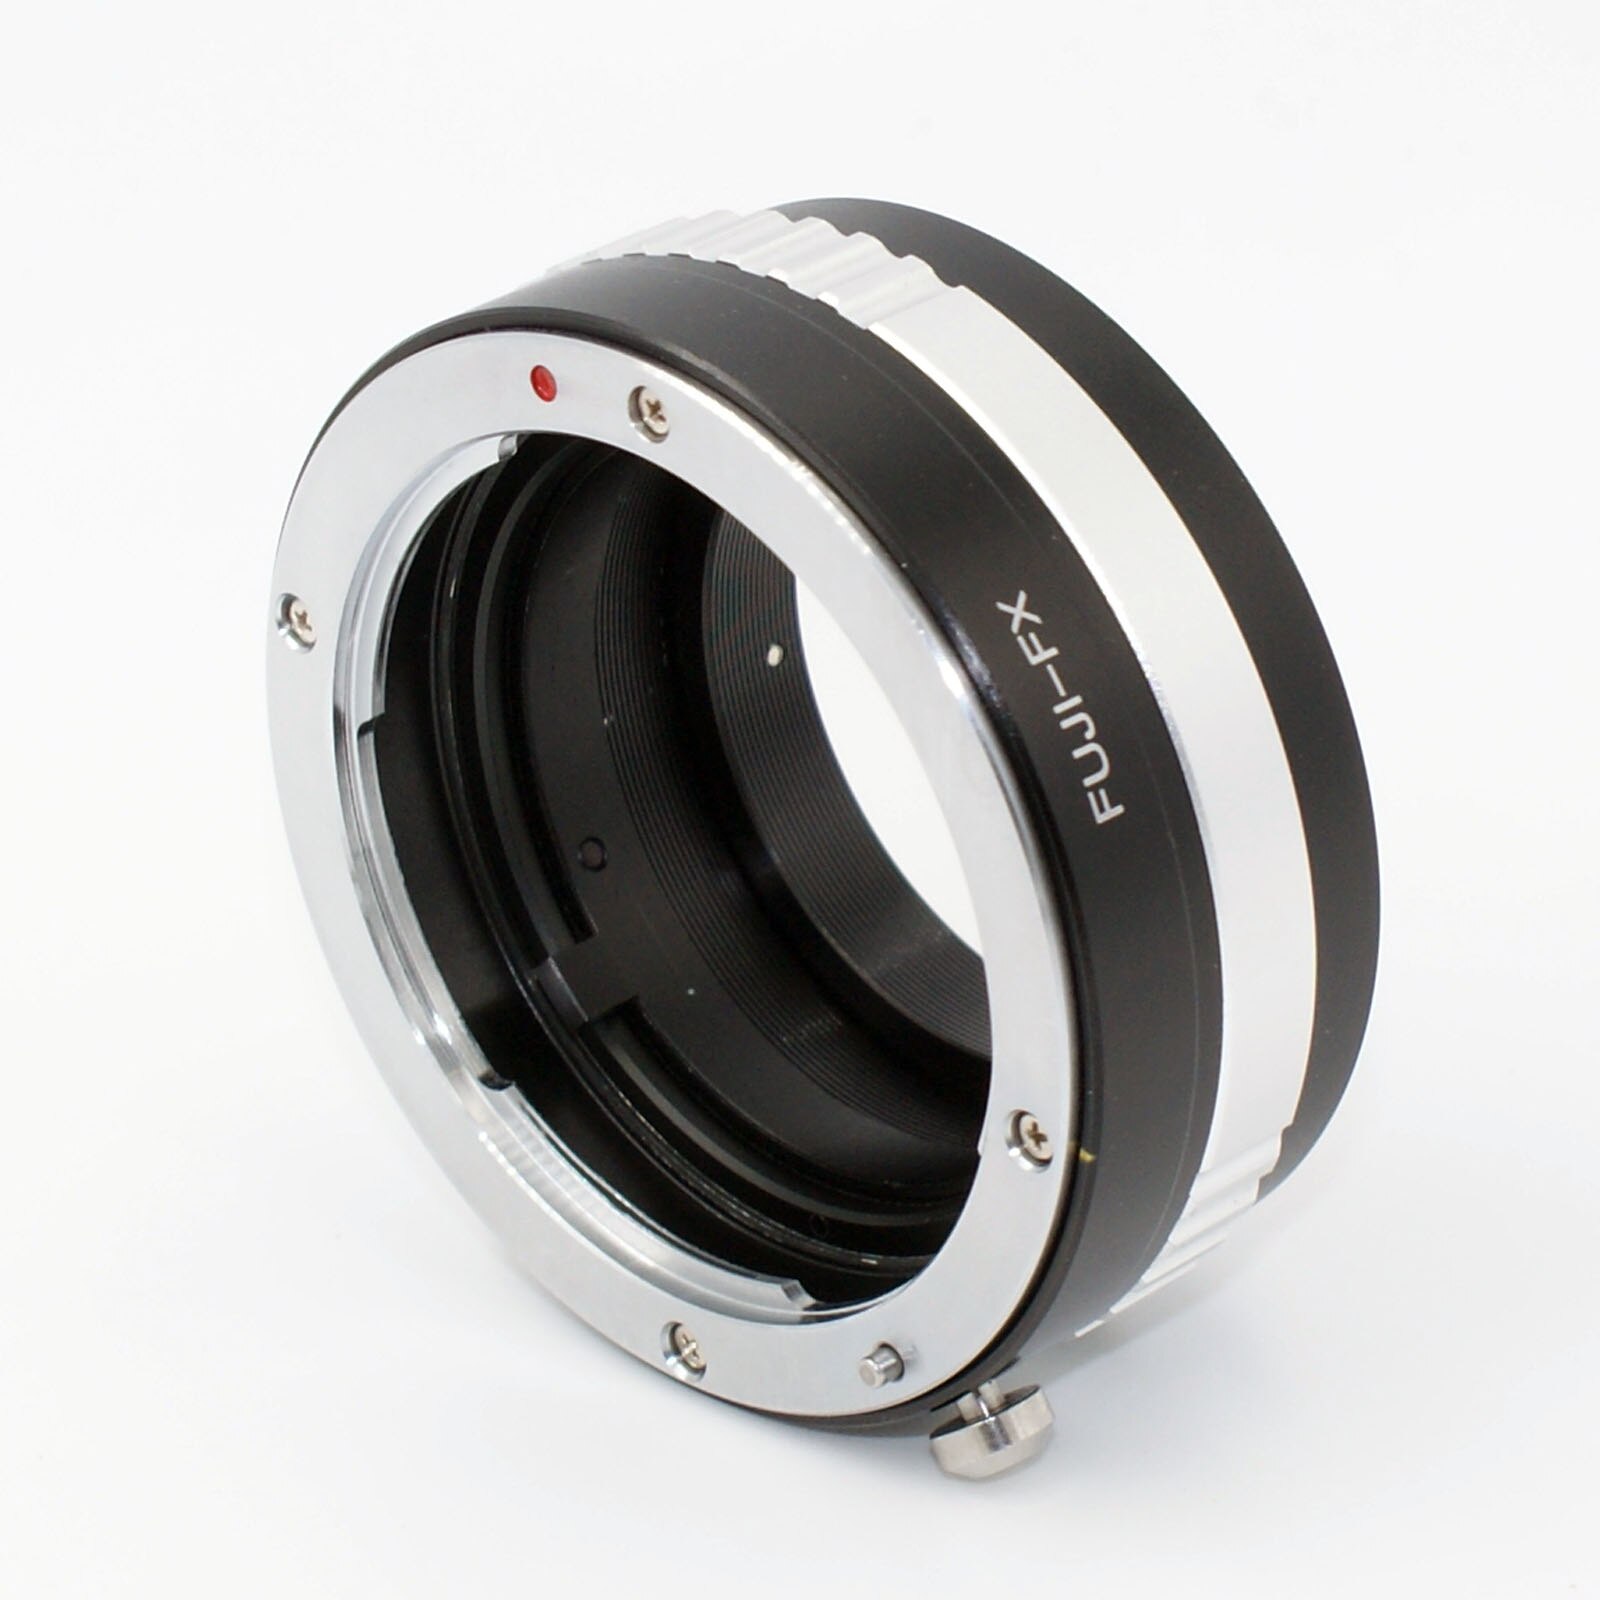 Fuji-Fx Adapter Voor Oude X-Fujinon Fujica X Ax Lens Fujifilm Fuji Fx Mount Camera X-T1 x-A3 X-Pro1 X-E1 X-E2 X-A5